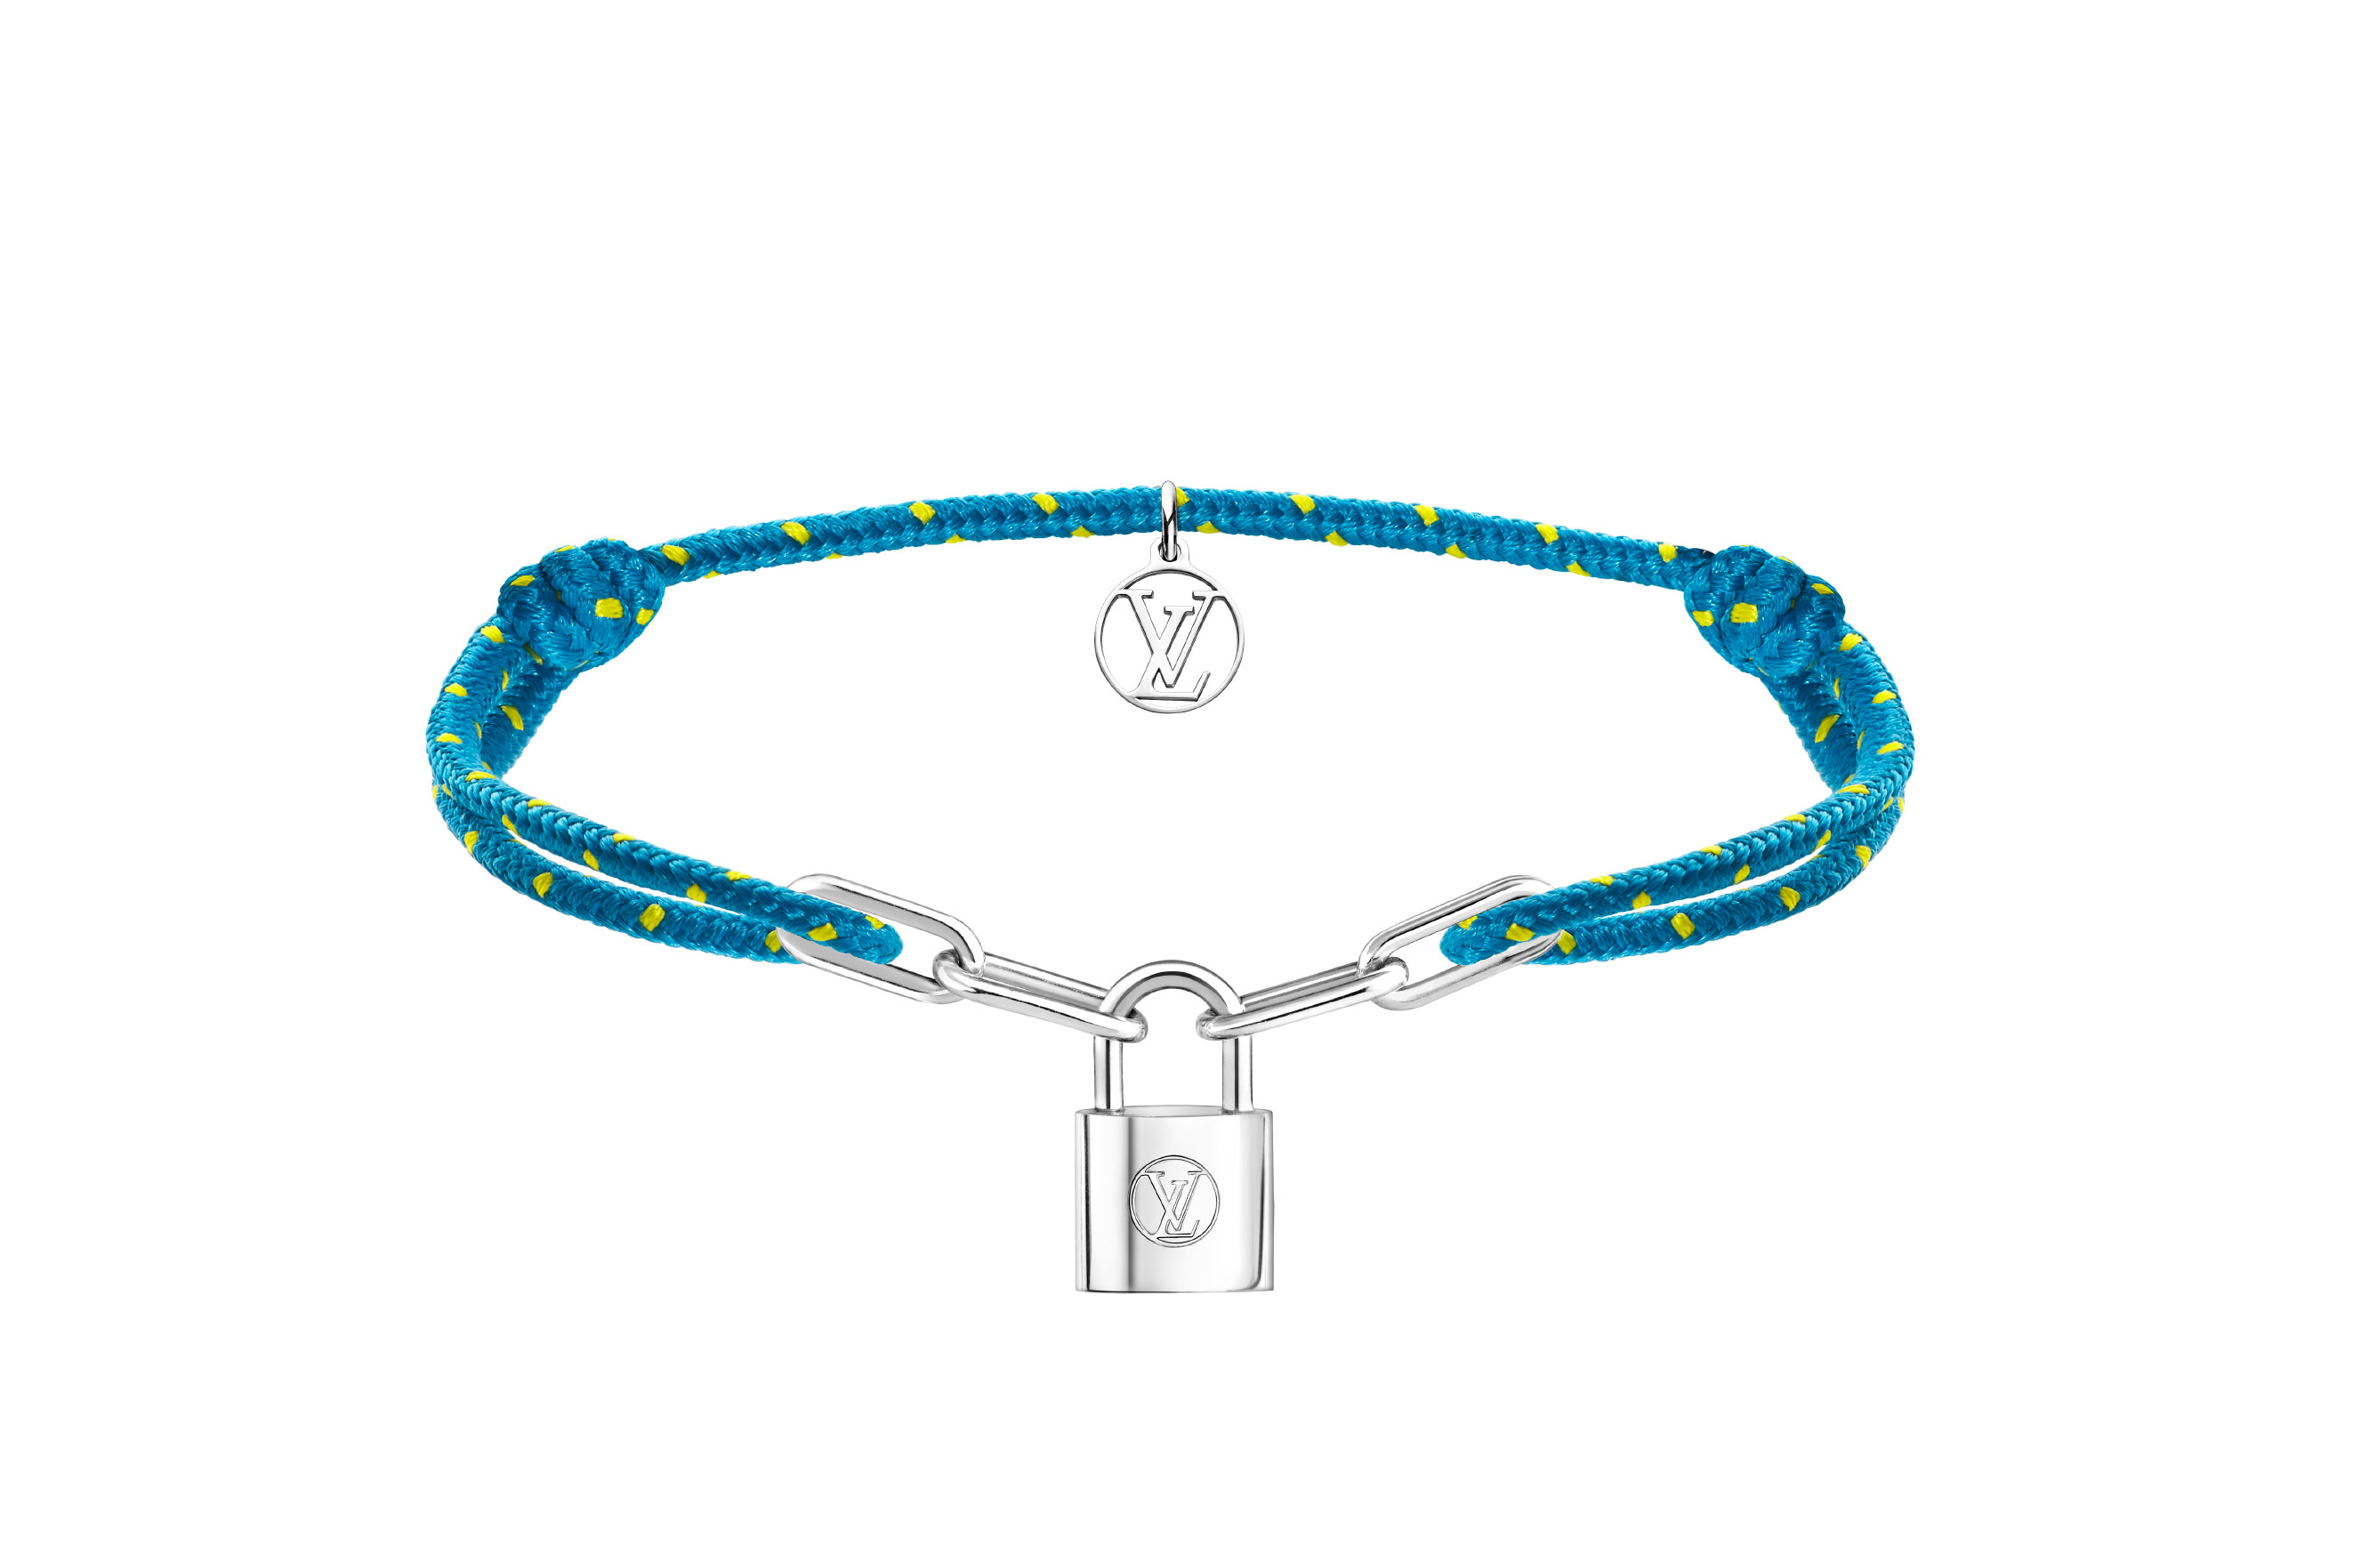 Virgil Abloh's Designs New Silver Bracelets for Louis Vuitton x UNICEF